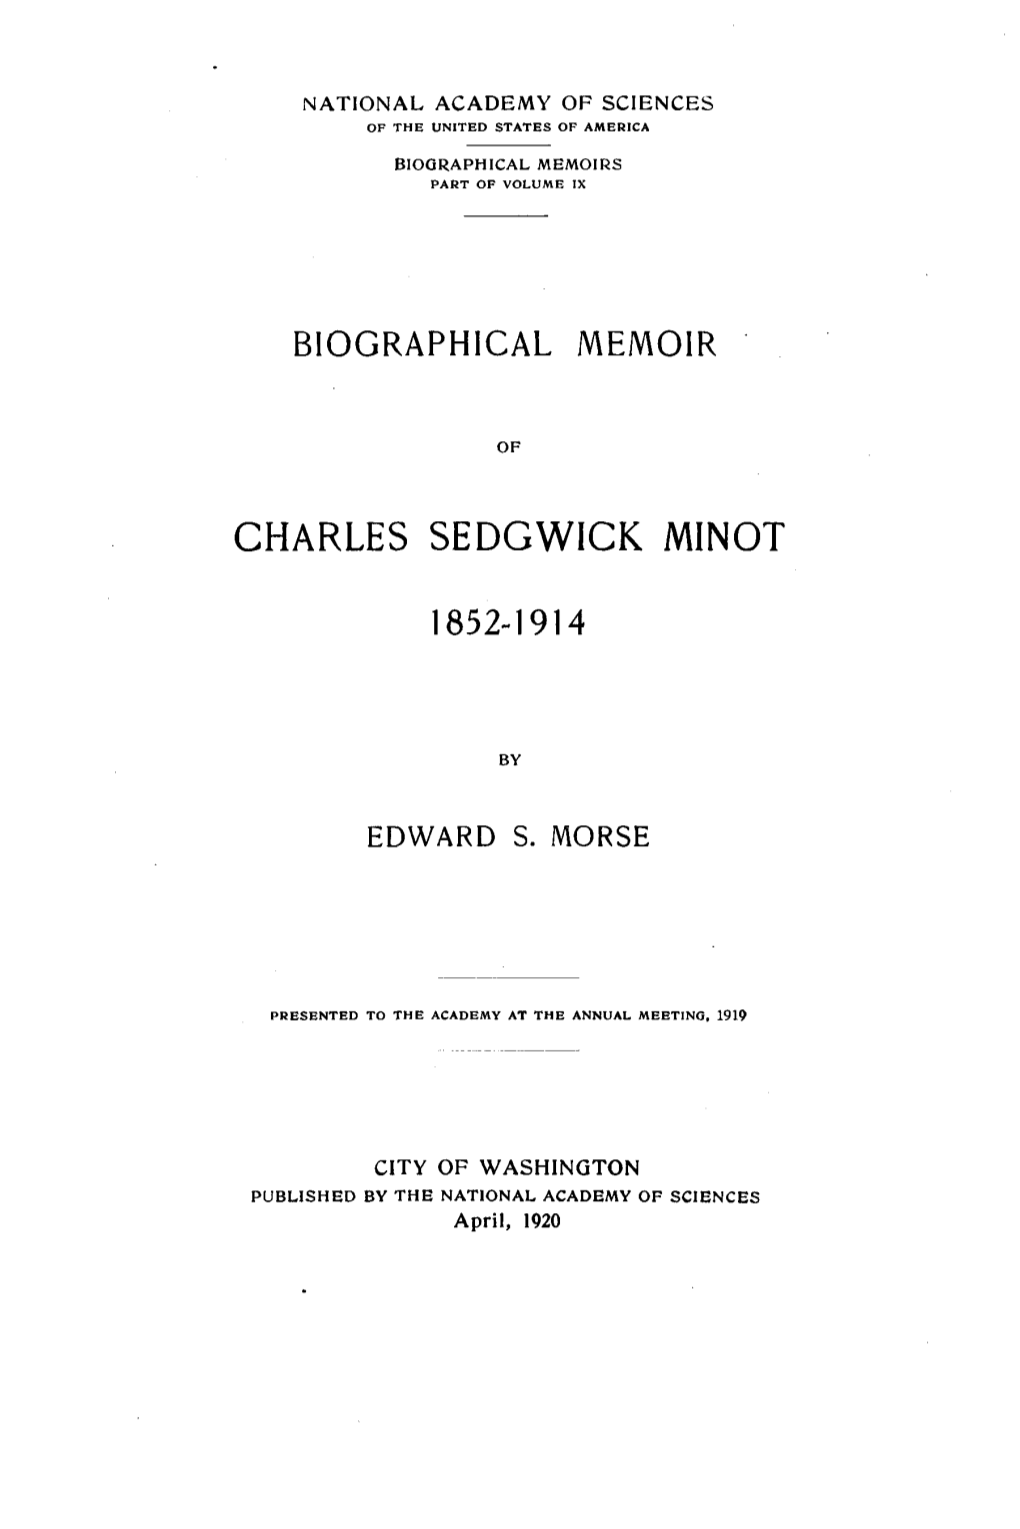 Charles Sedgwick Minot